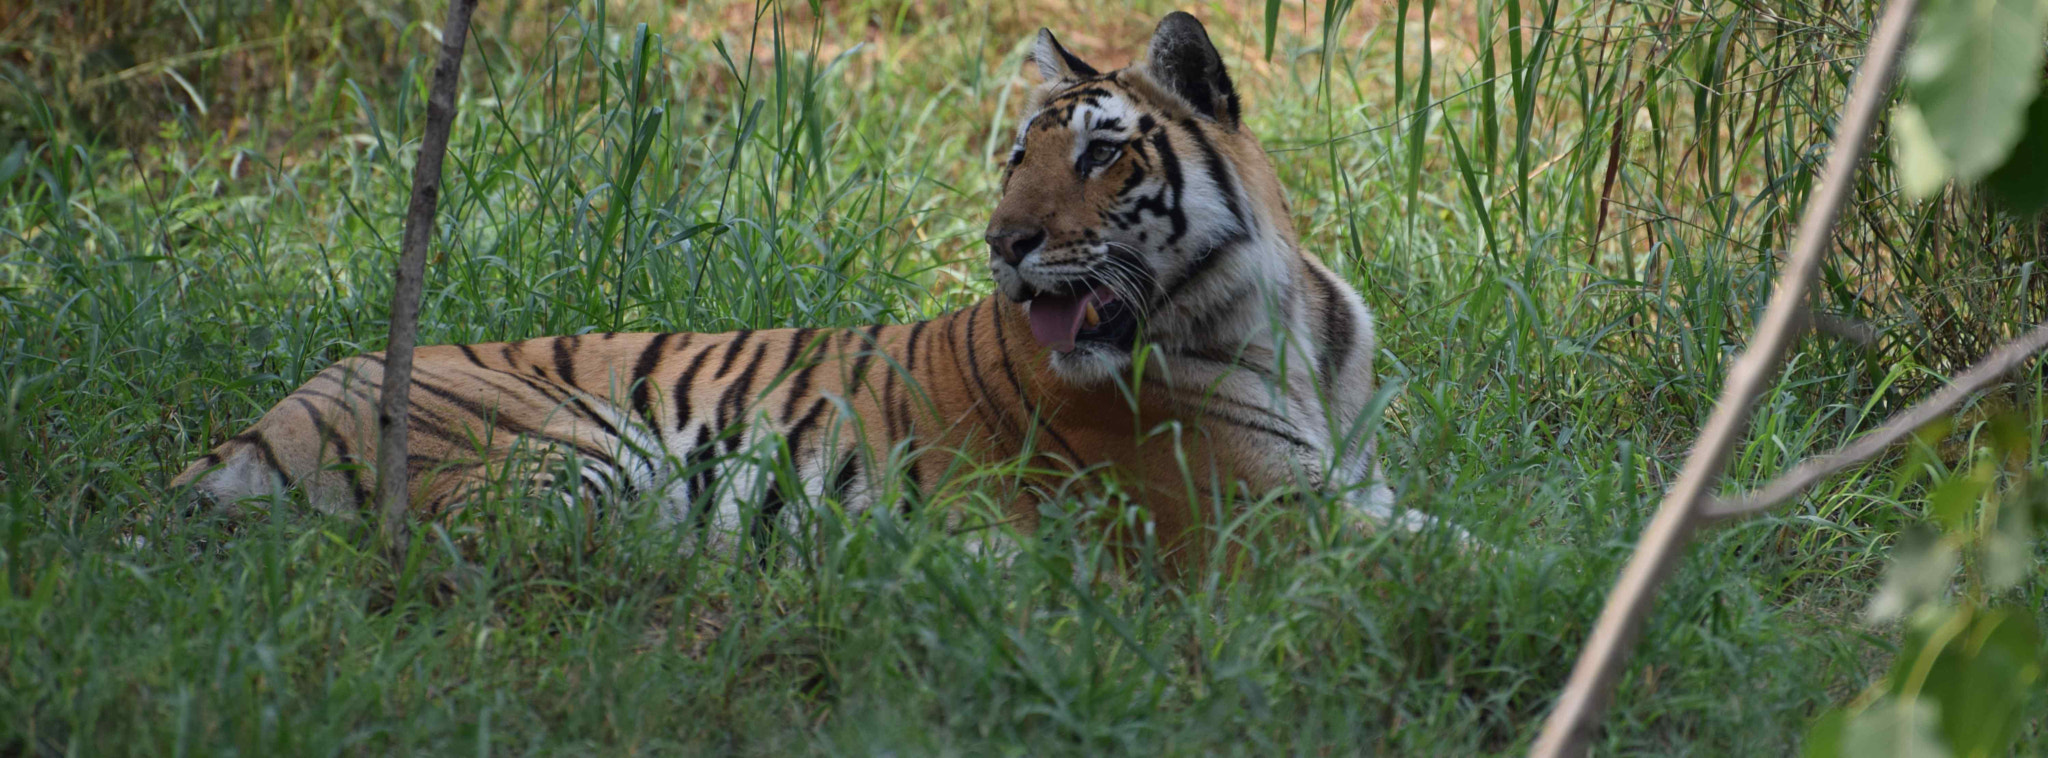 Nikon D5300 sample photo. Bengal tiger photography